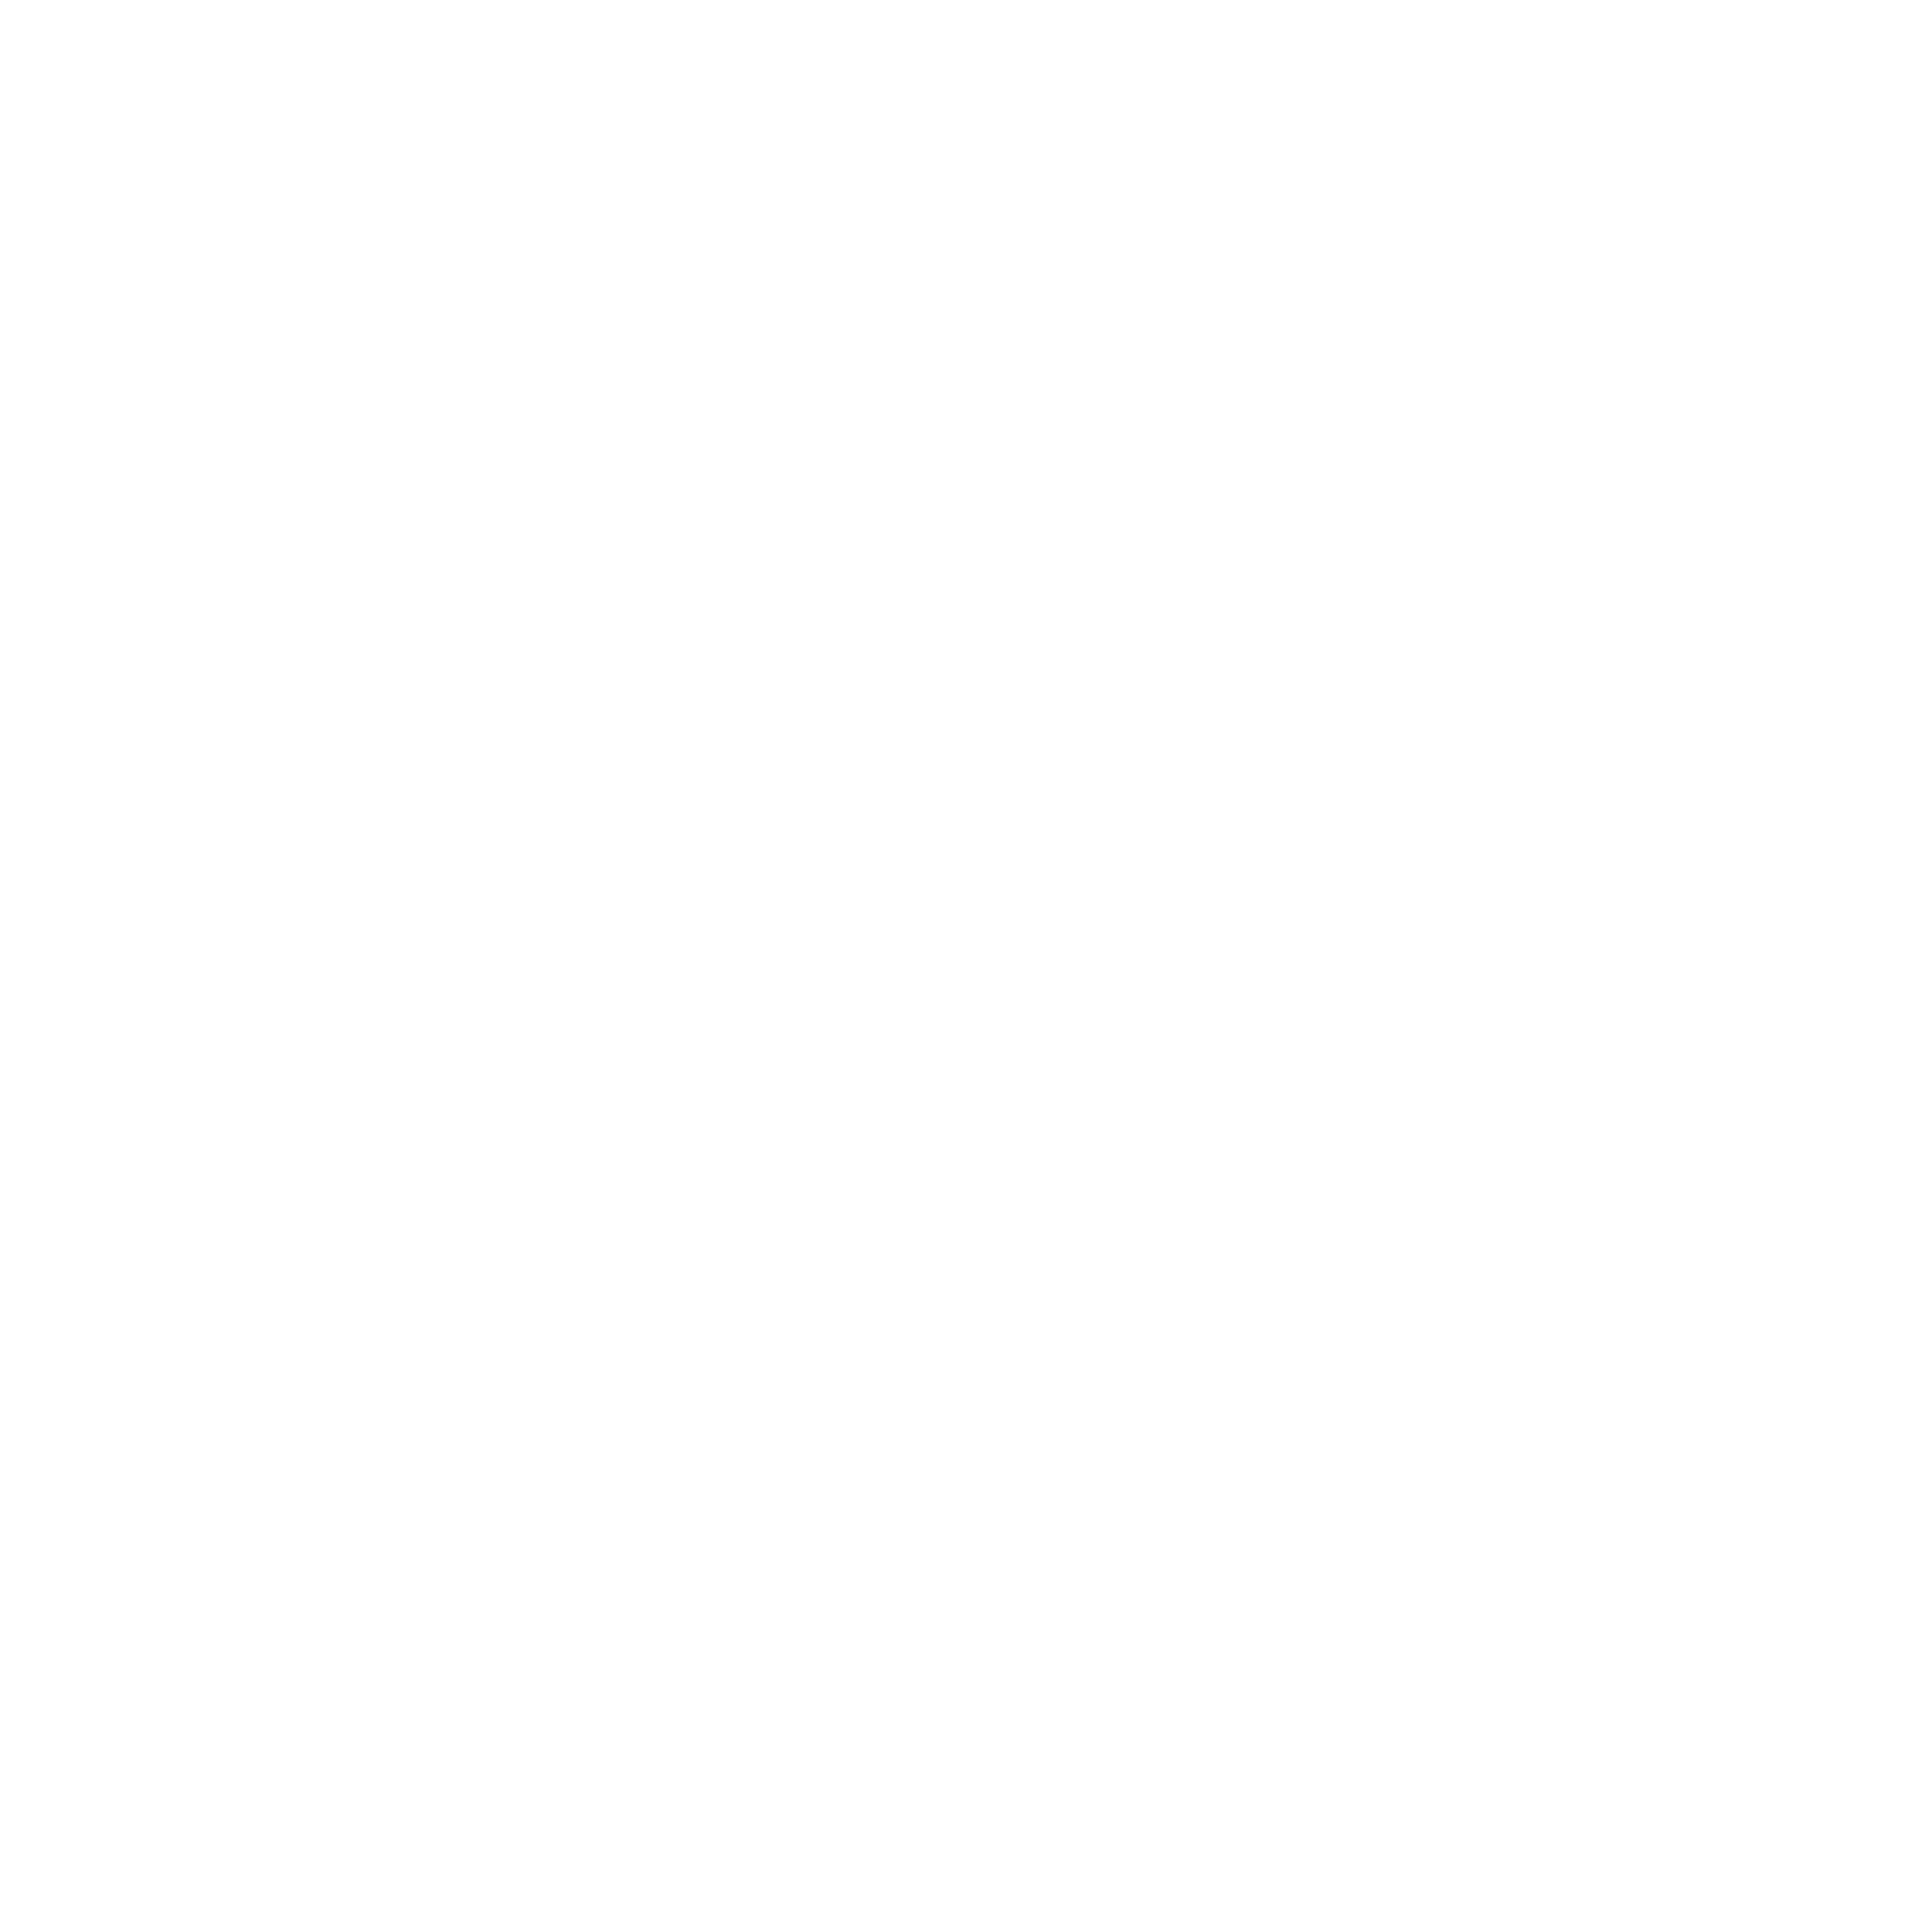 Below The Design